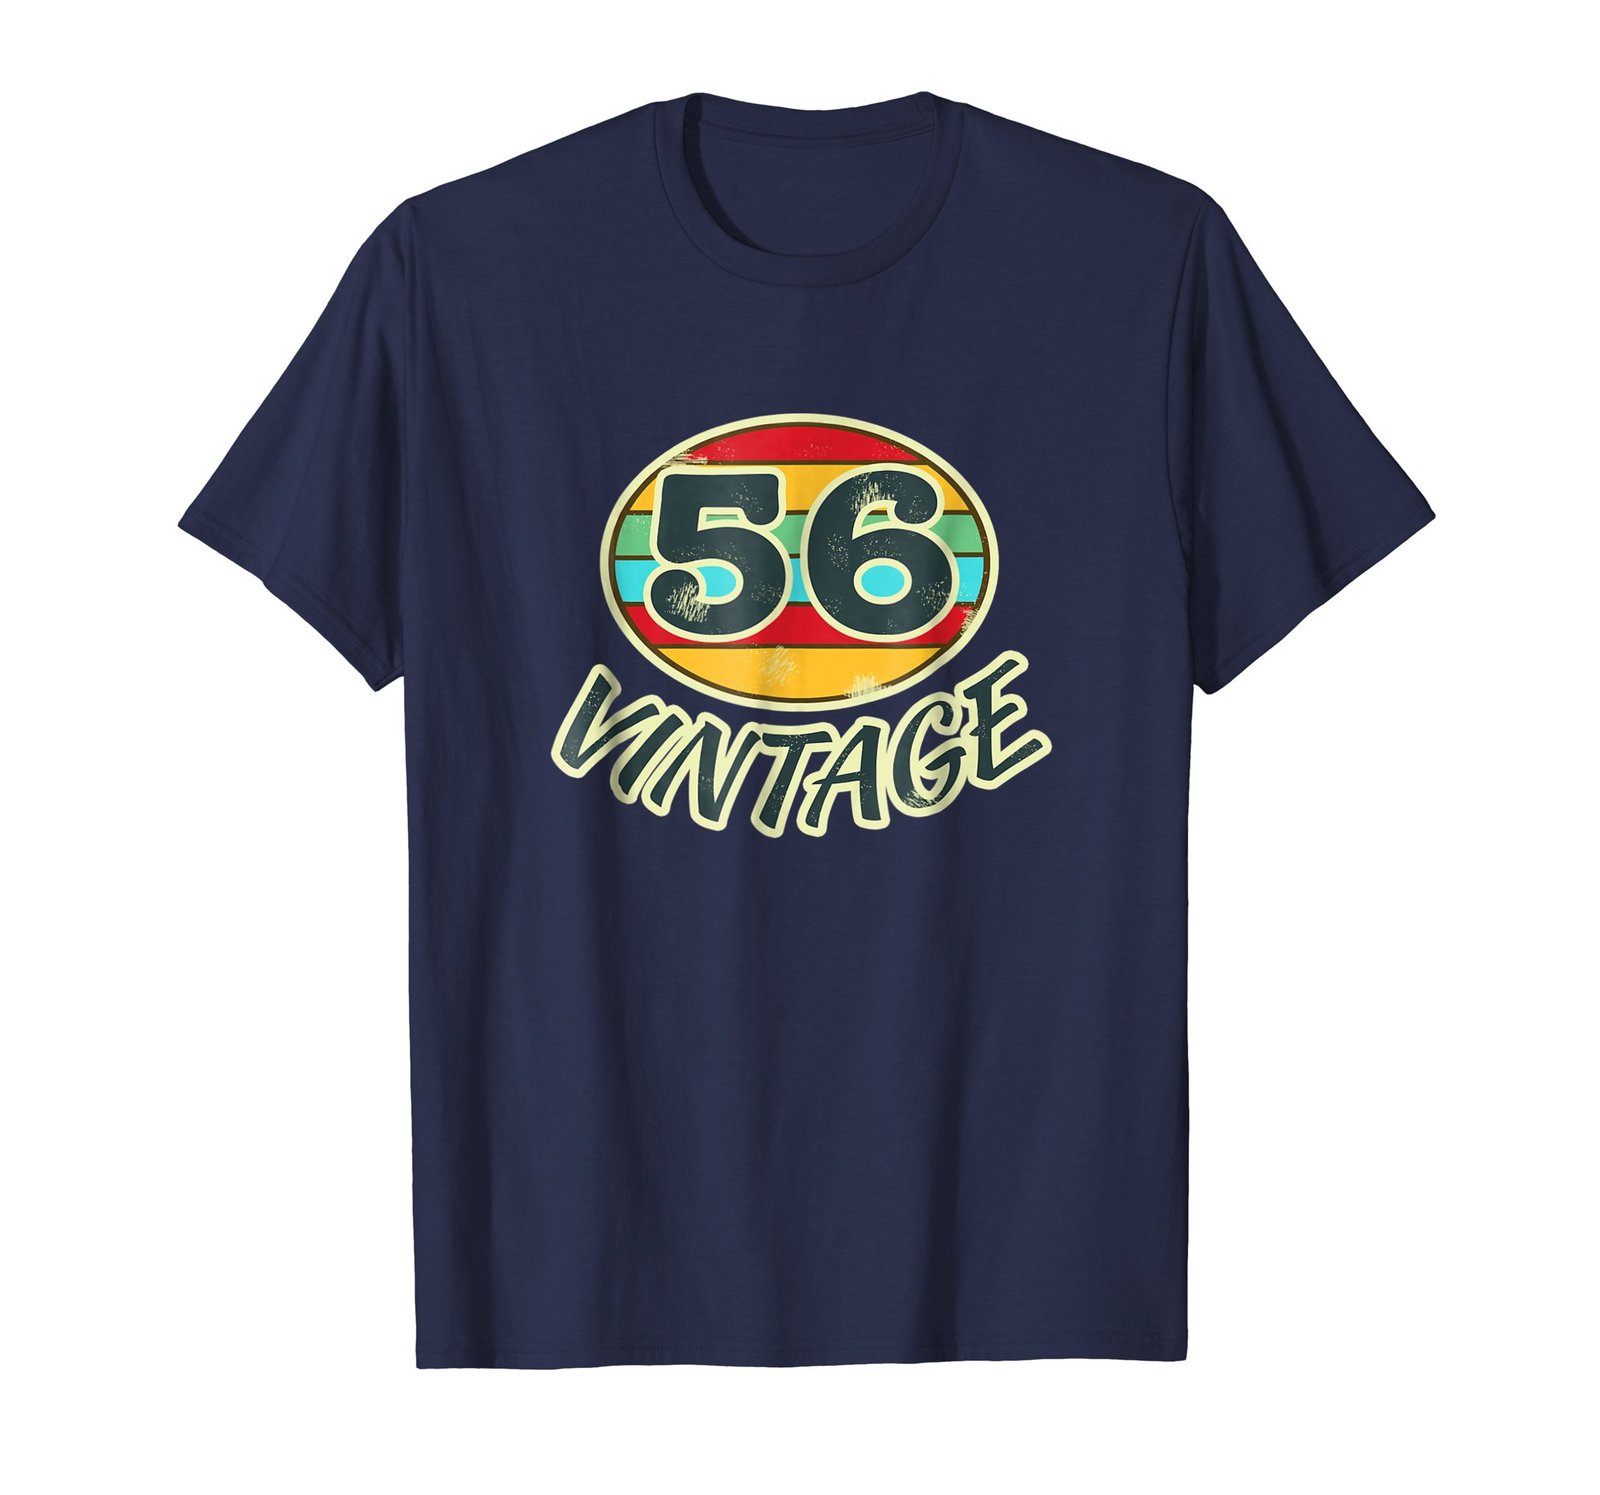 Funny Shirts - DOB 1956 TShirt Vintage Retro 56 Birth Year Tee Shirt Men